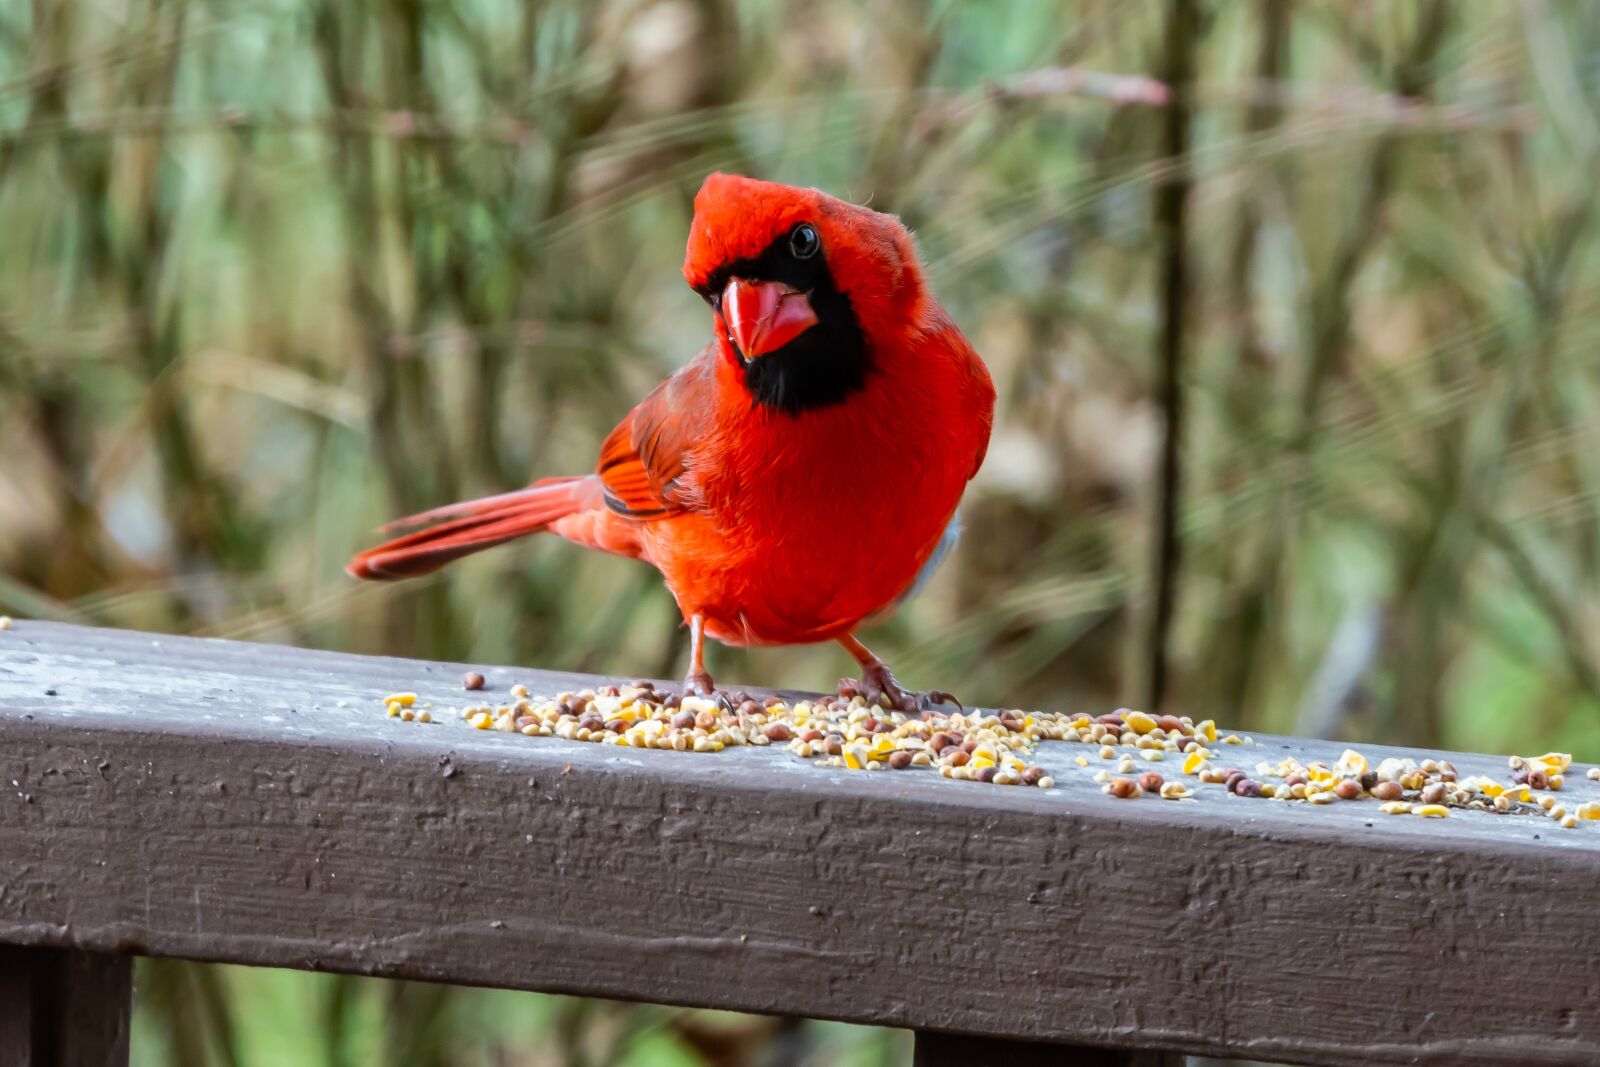 Nikon D850 sample photo. Cardinal, bird, wildlife photography